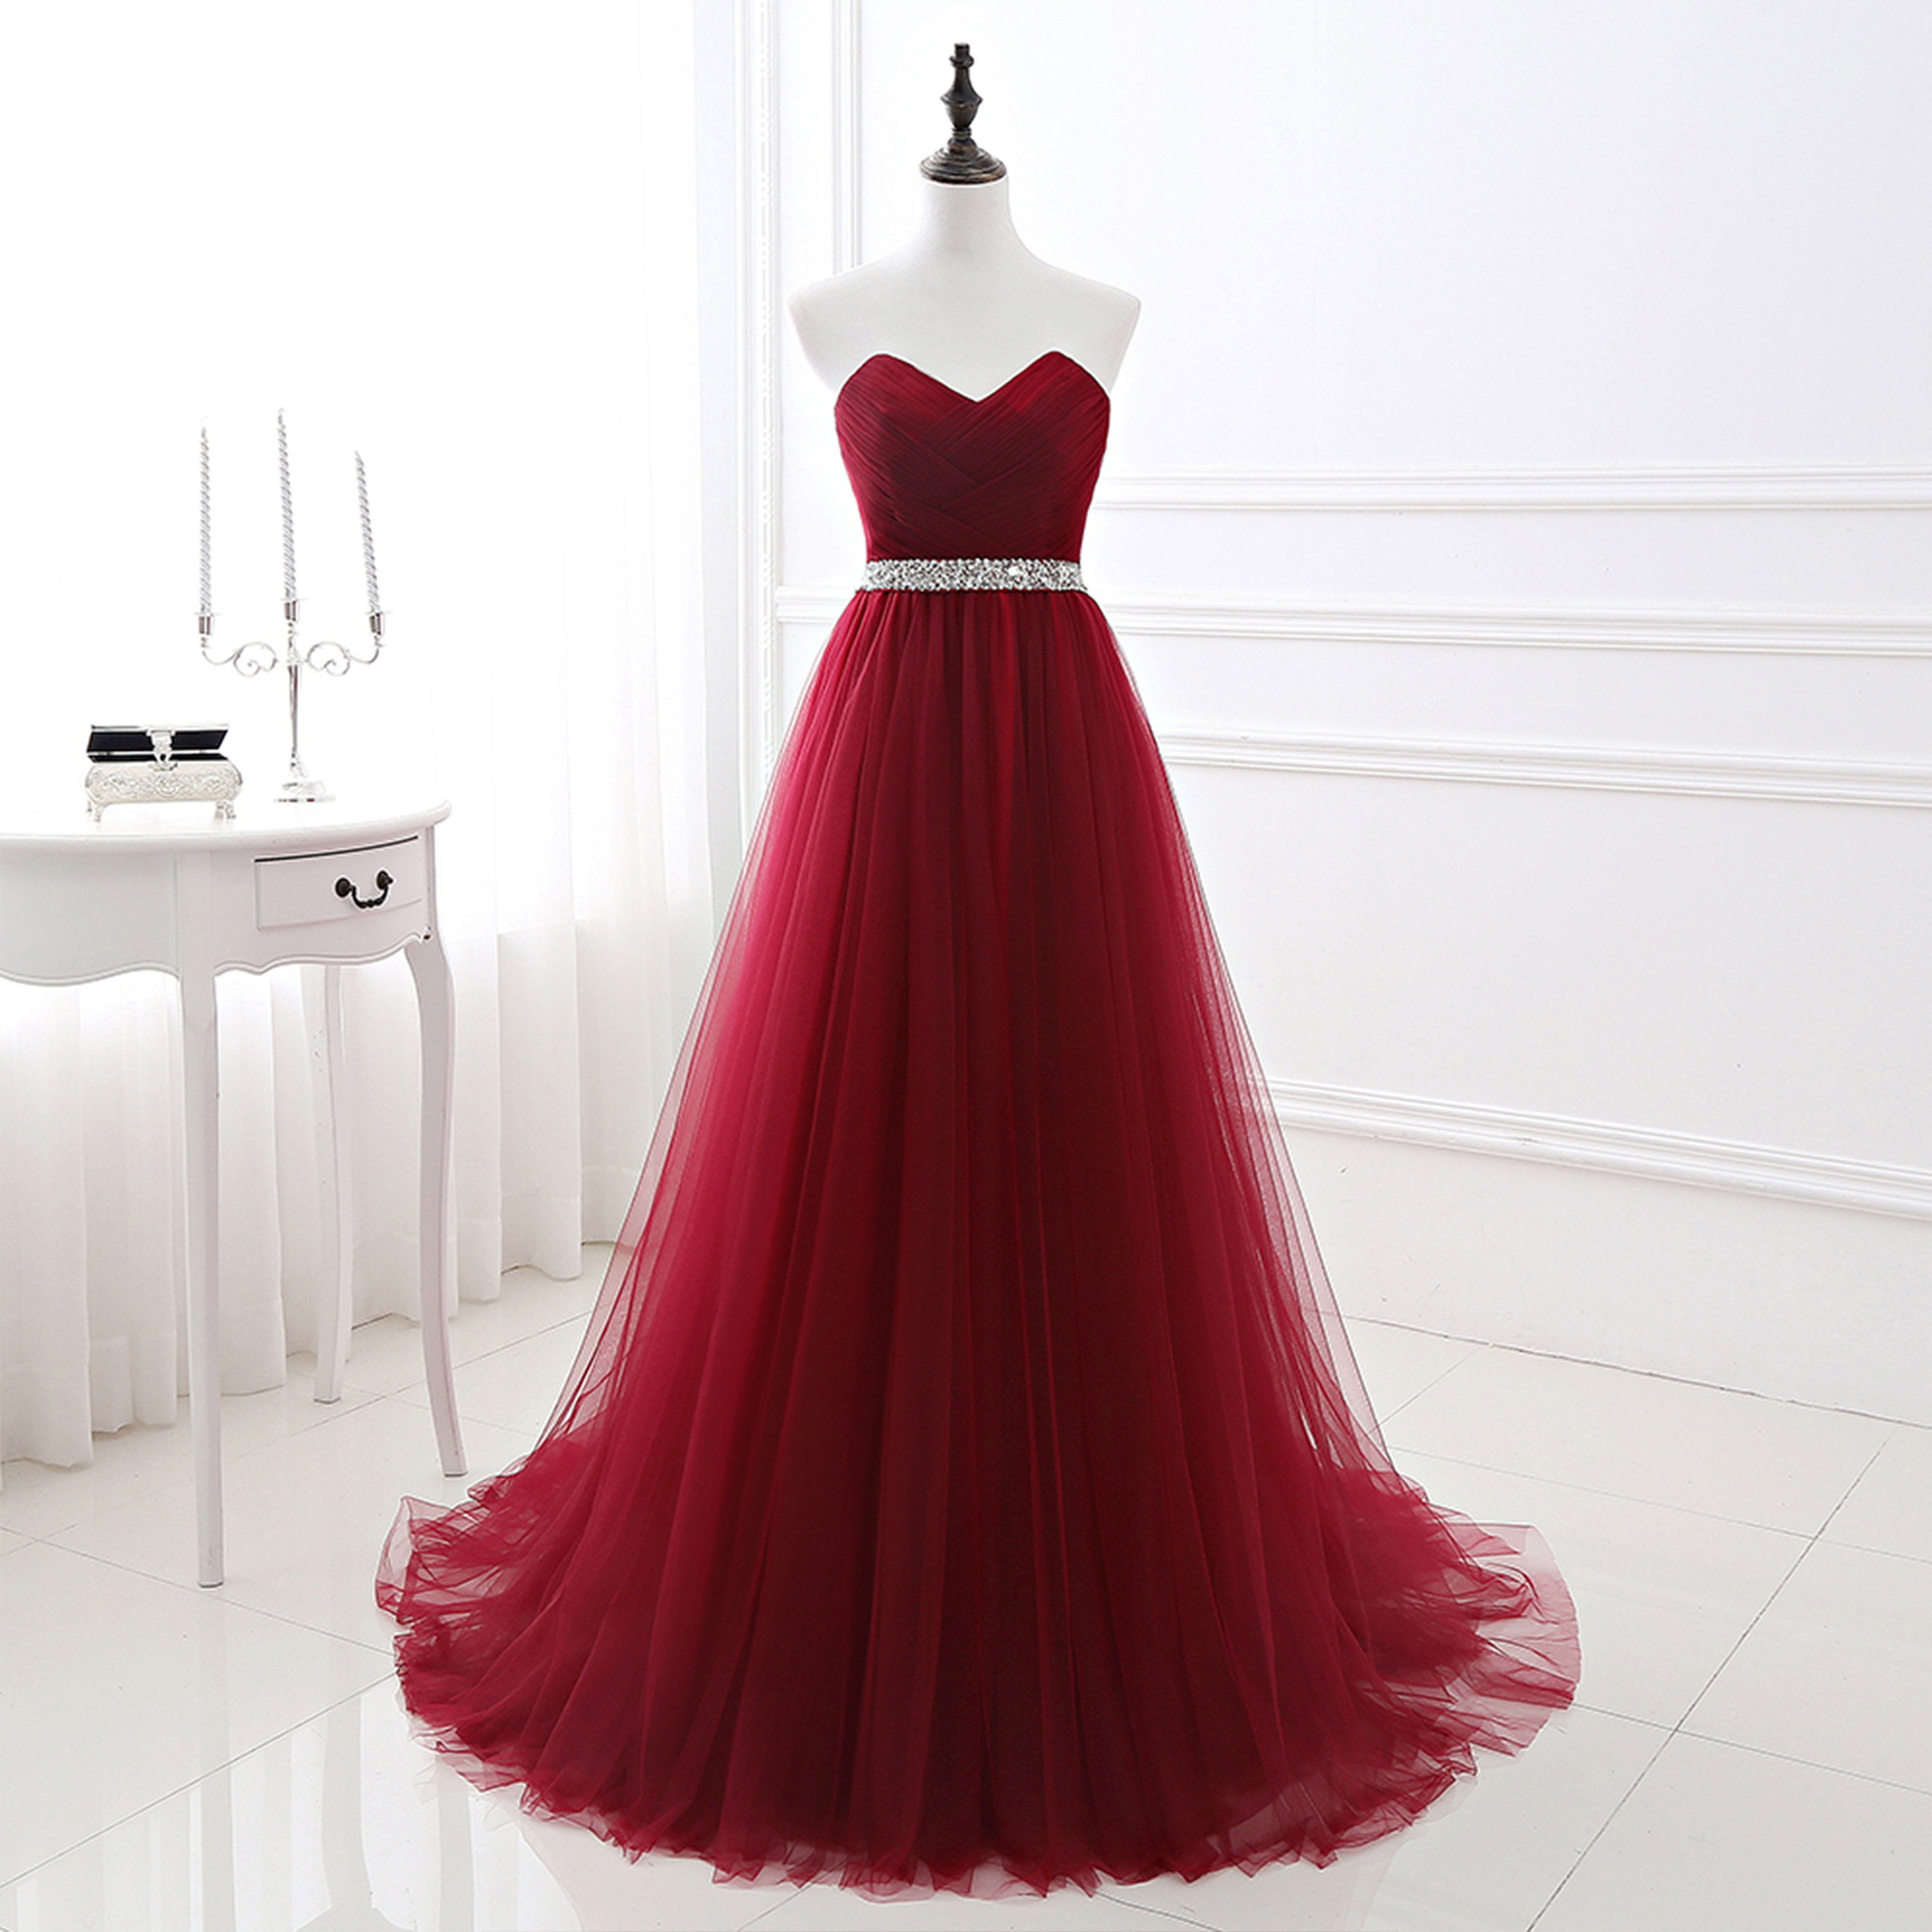 Red Dress Tulle Dress Boho Wedding Dress Tullle - Etsy